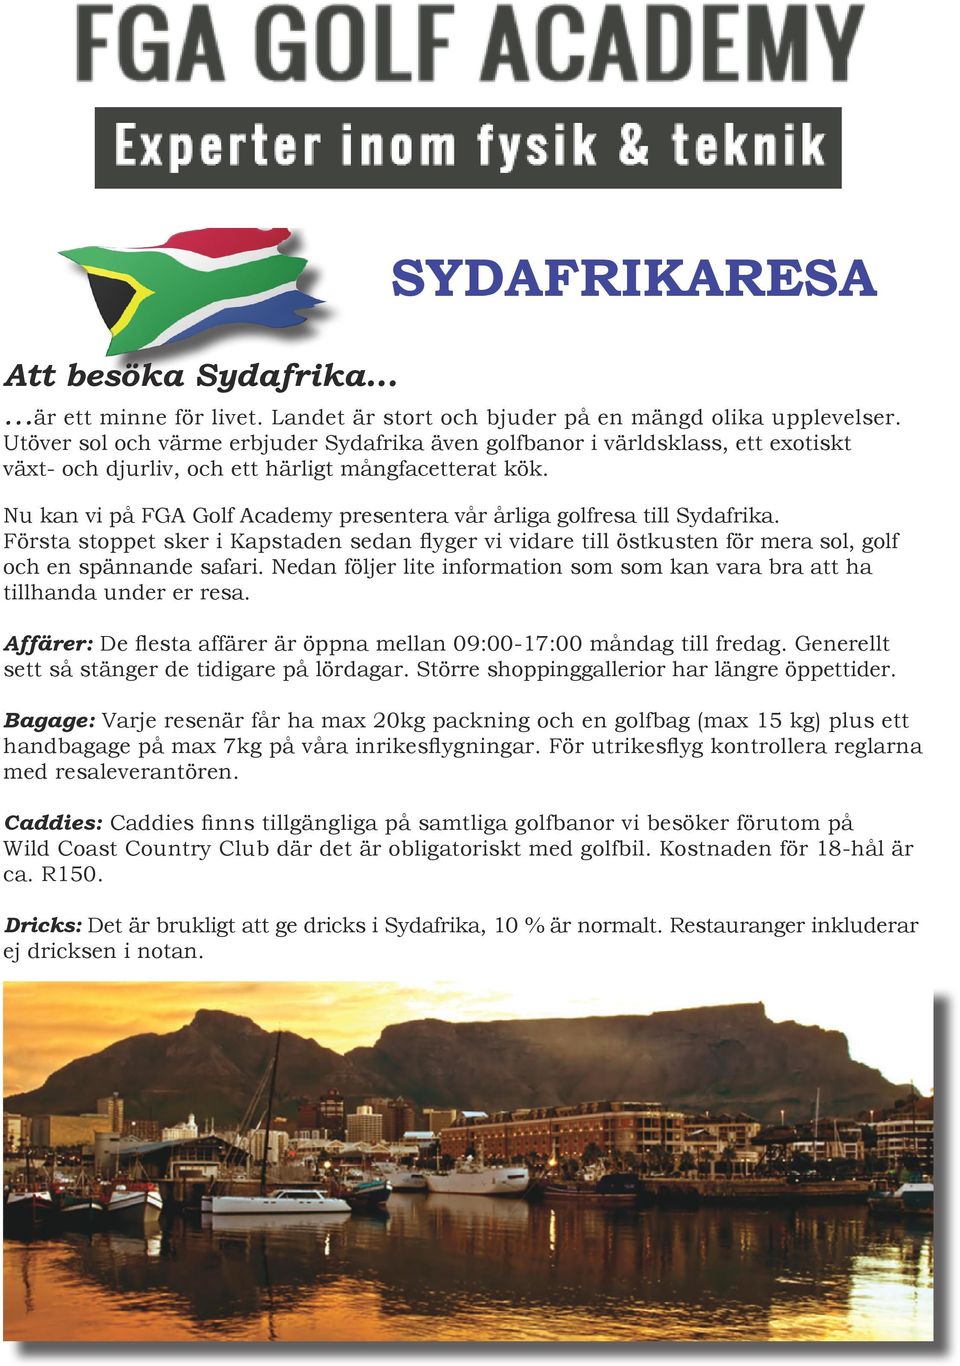 Nu kan vi på FGA Golf Academy presentera vår årliga golfresa till Sydafrika. Första stoppet sker i Kapstaden sedan flyger vi vidare till östkusten för mera sol, golf och en spännande safari.